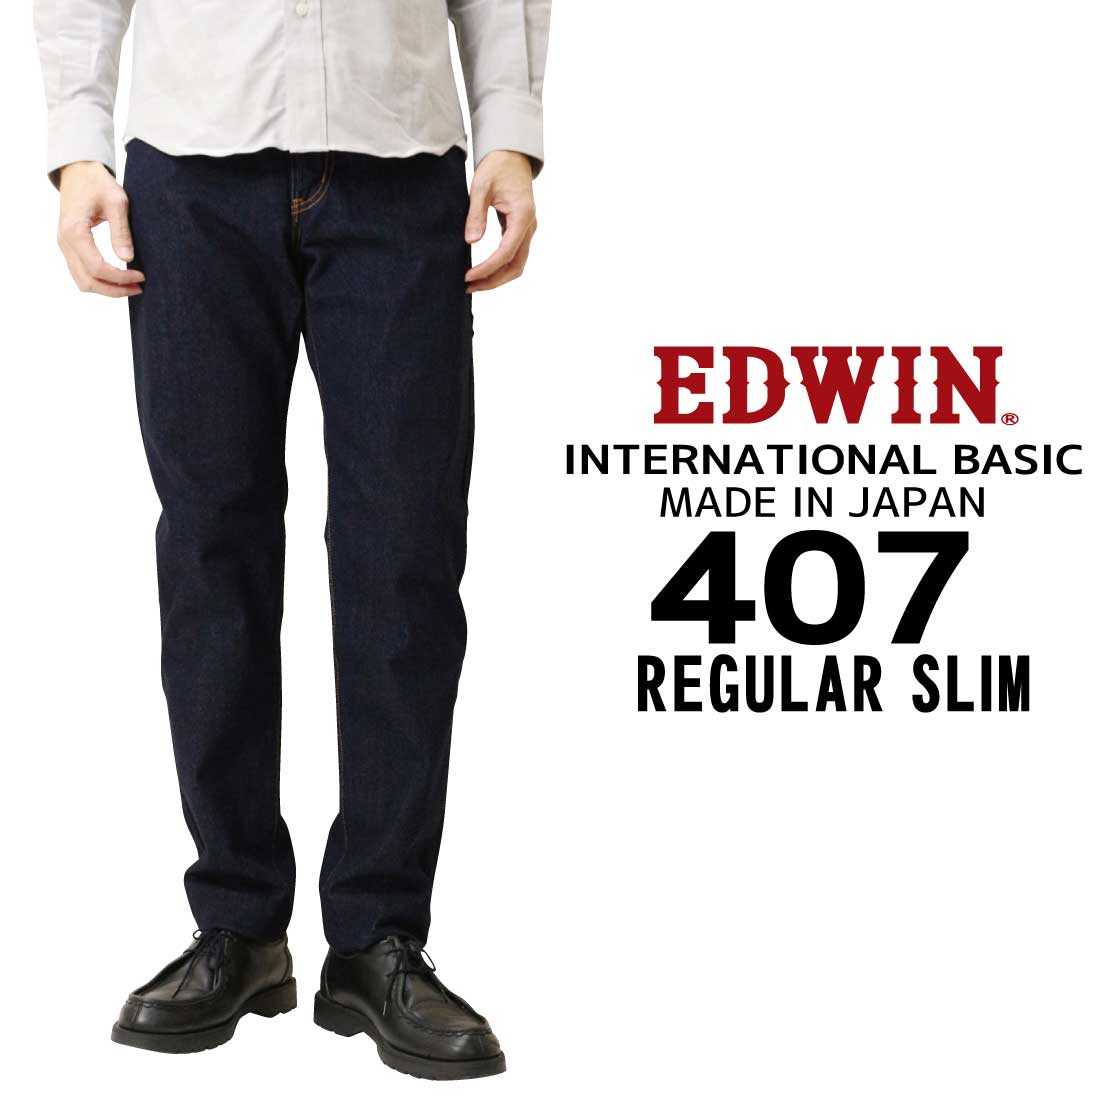 EDWIN ジーンズ 407 スリム E407 インターナショナルベーシック 日本製 200 93 ...